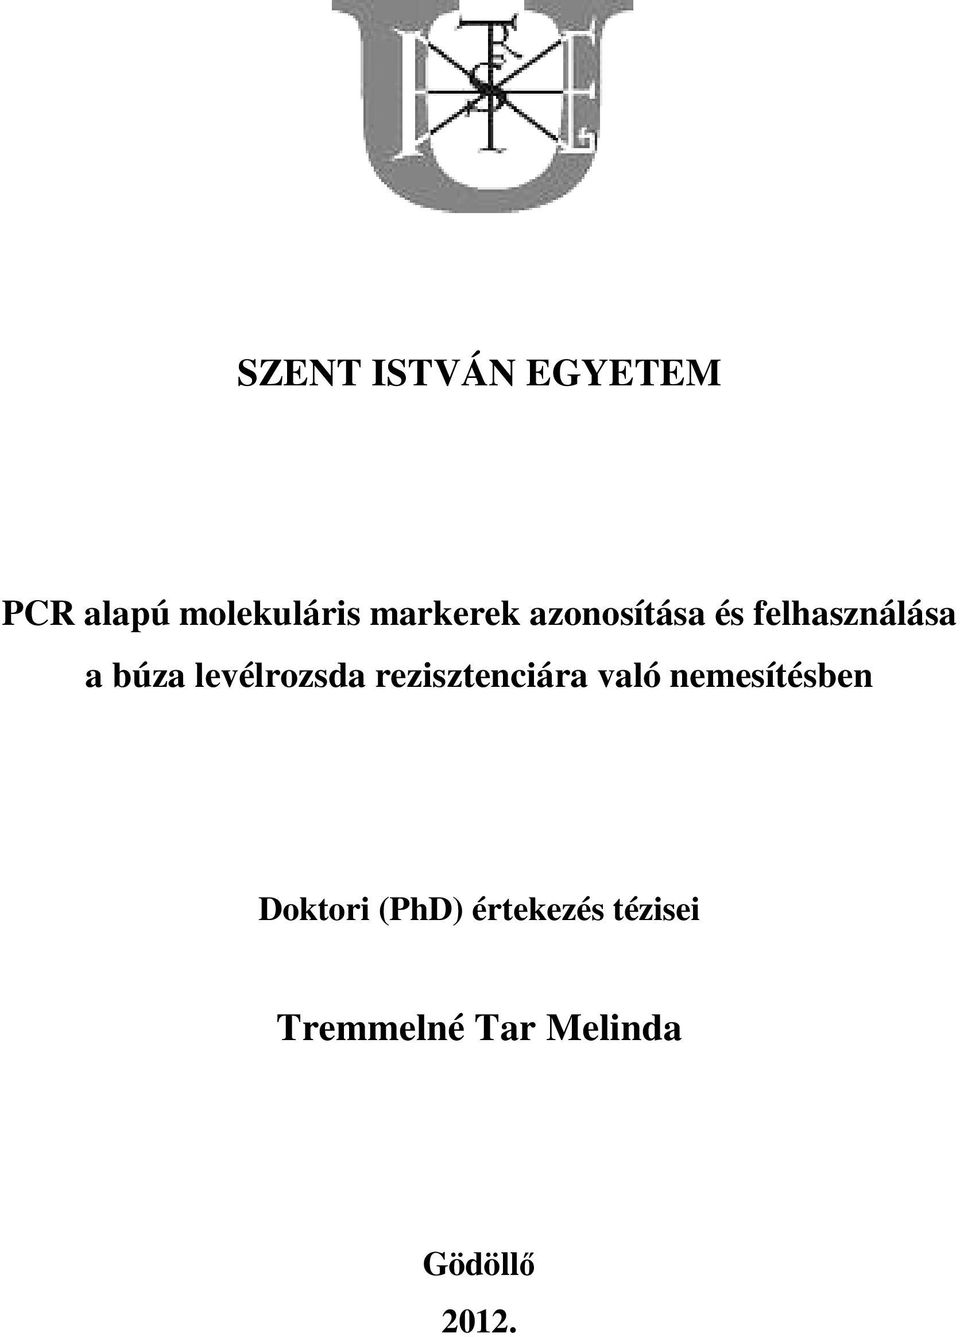 Tremmelné Tar Melinda - PDF Ingyenes letöltés